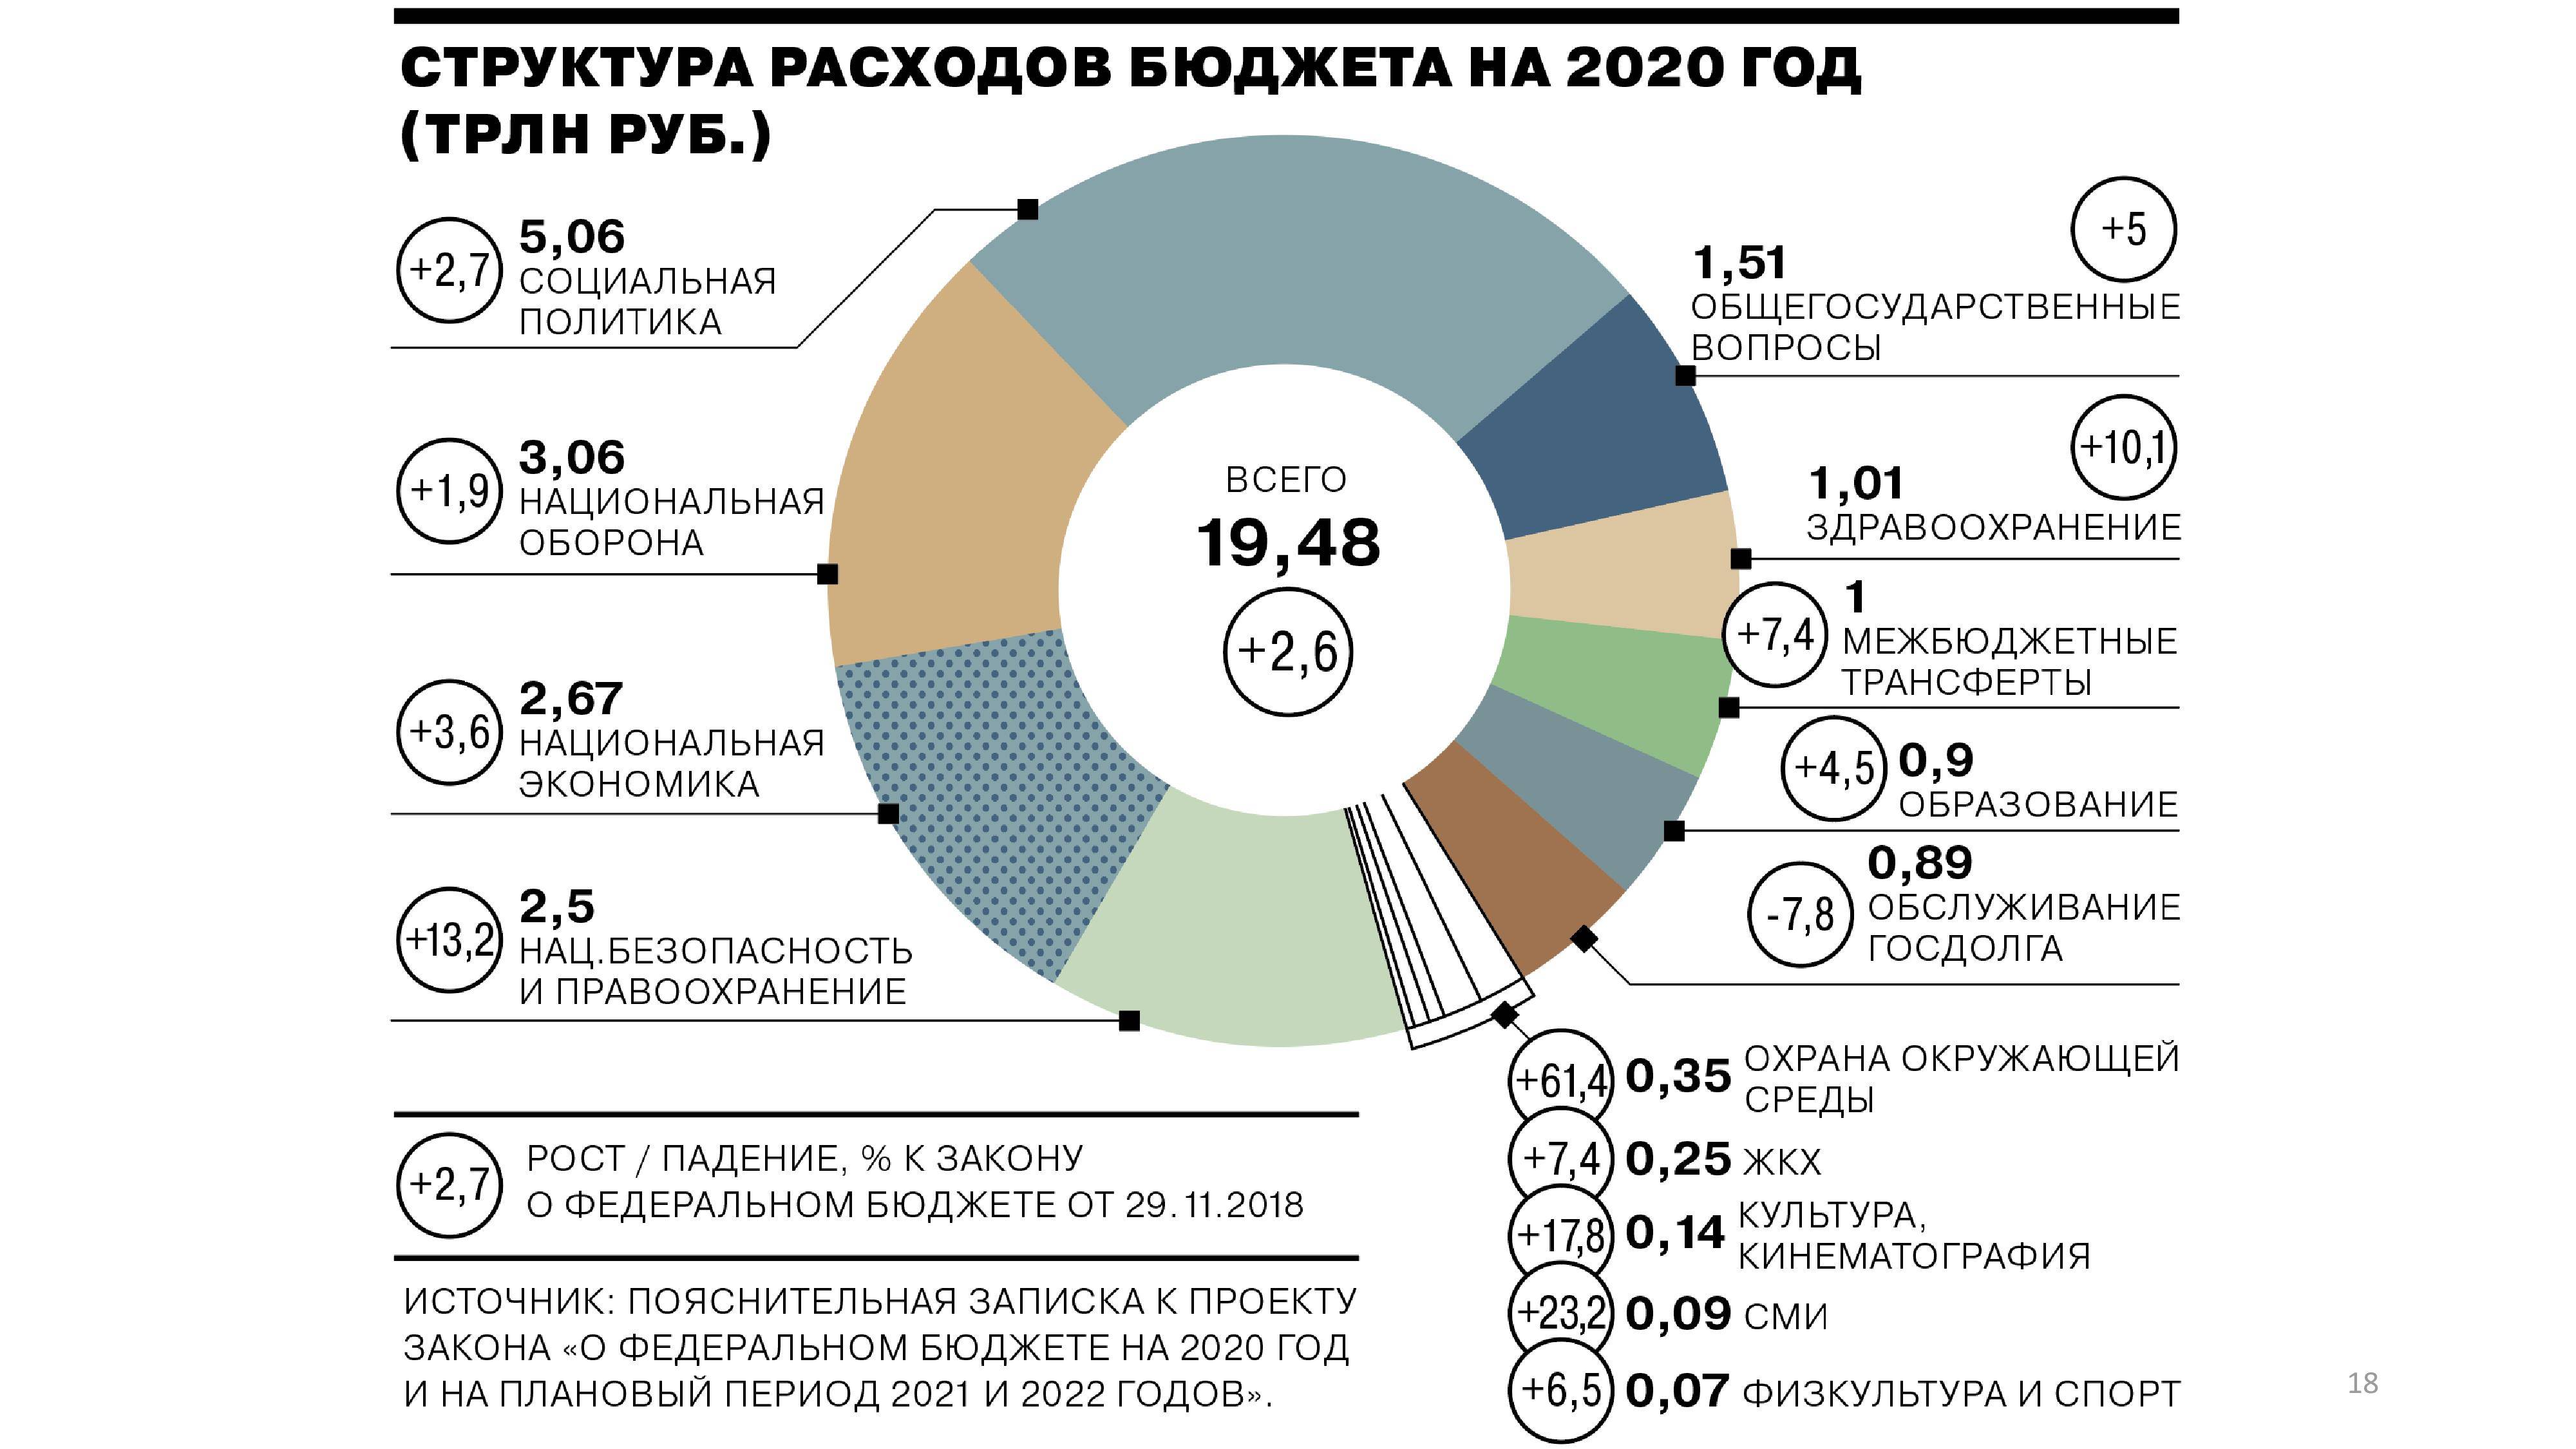 Бюджет россии на 2020 год: из чего складывается, в цифрах